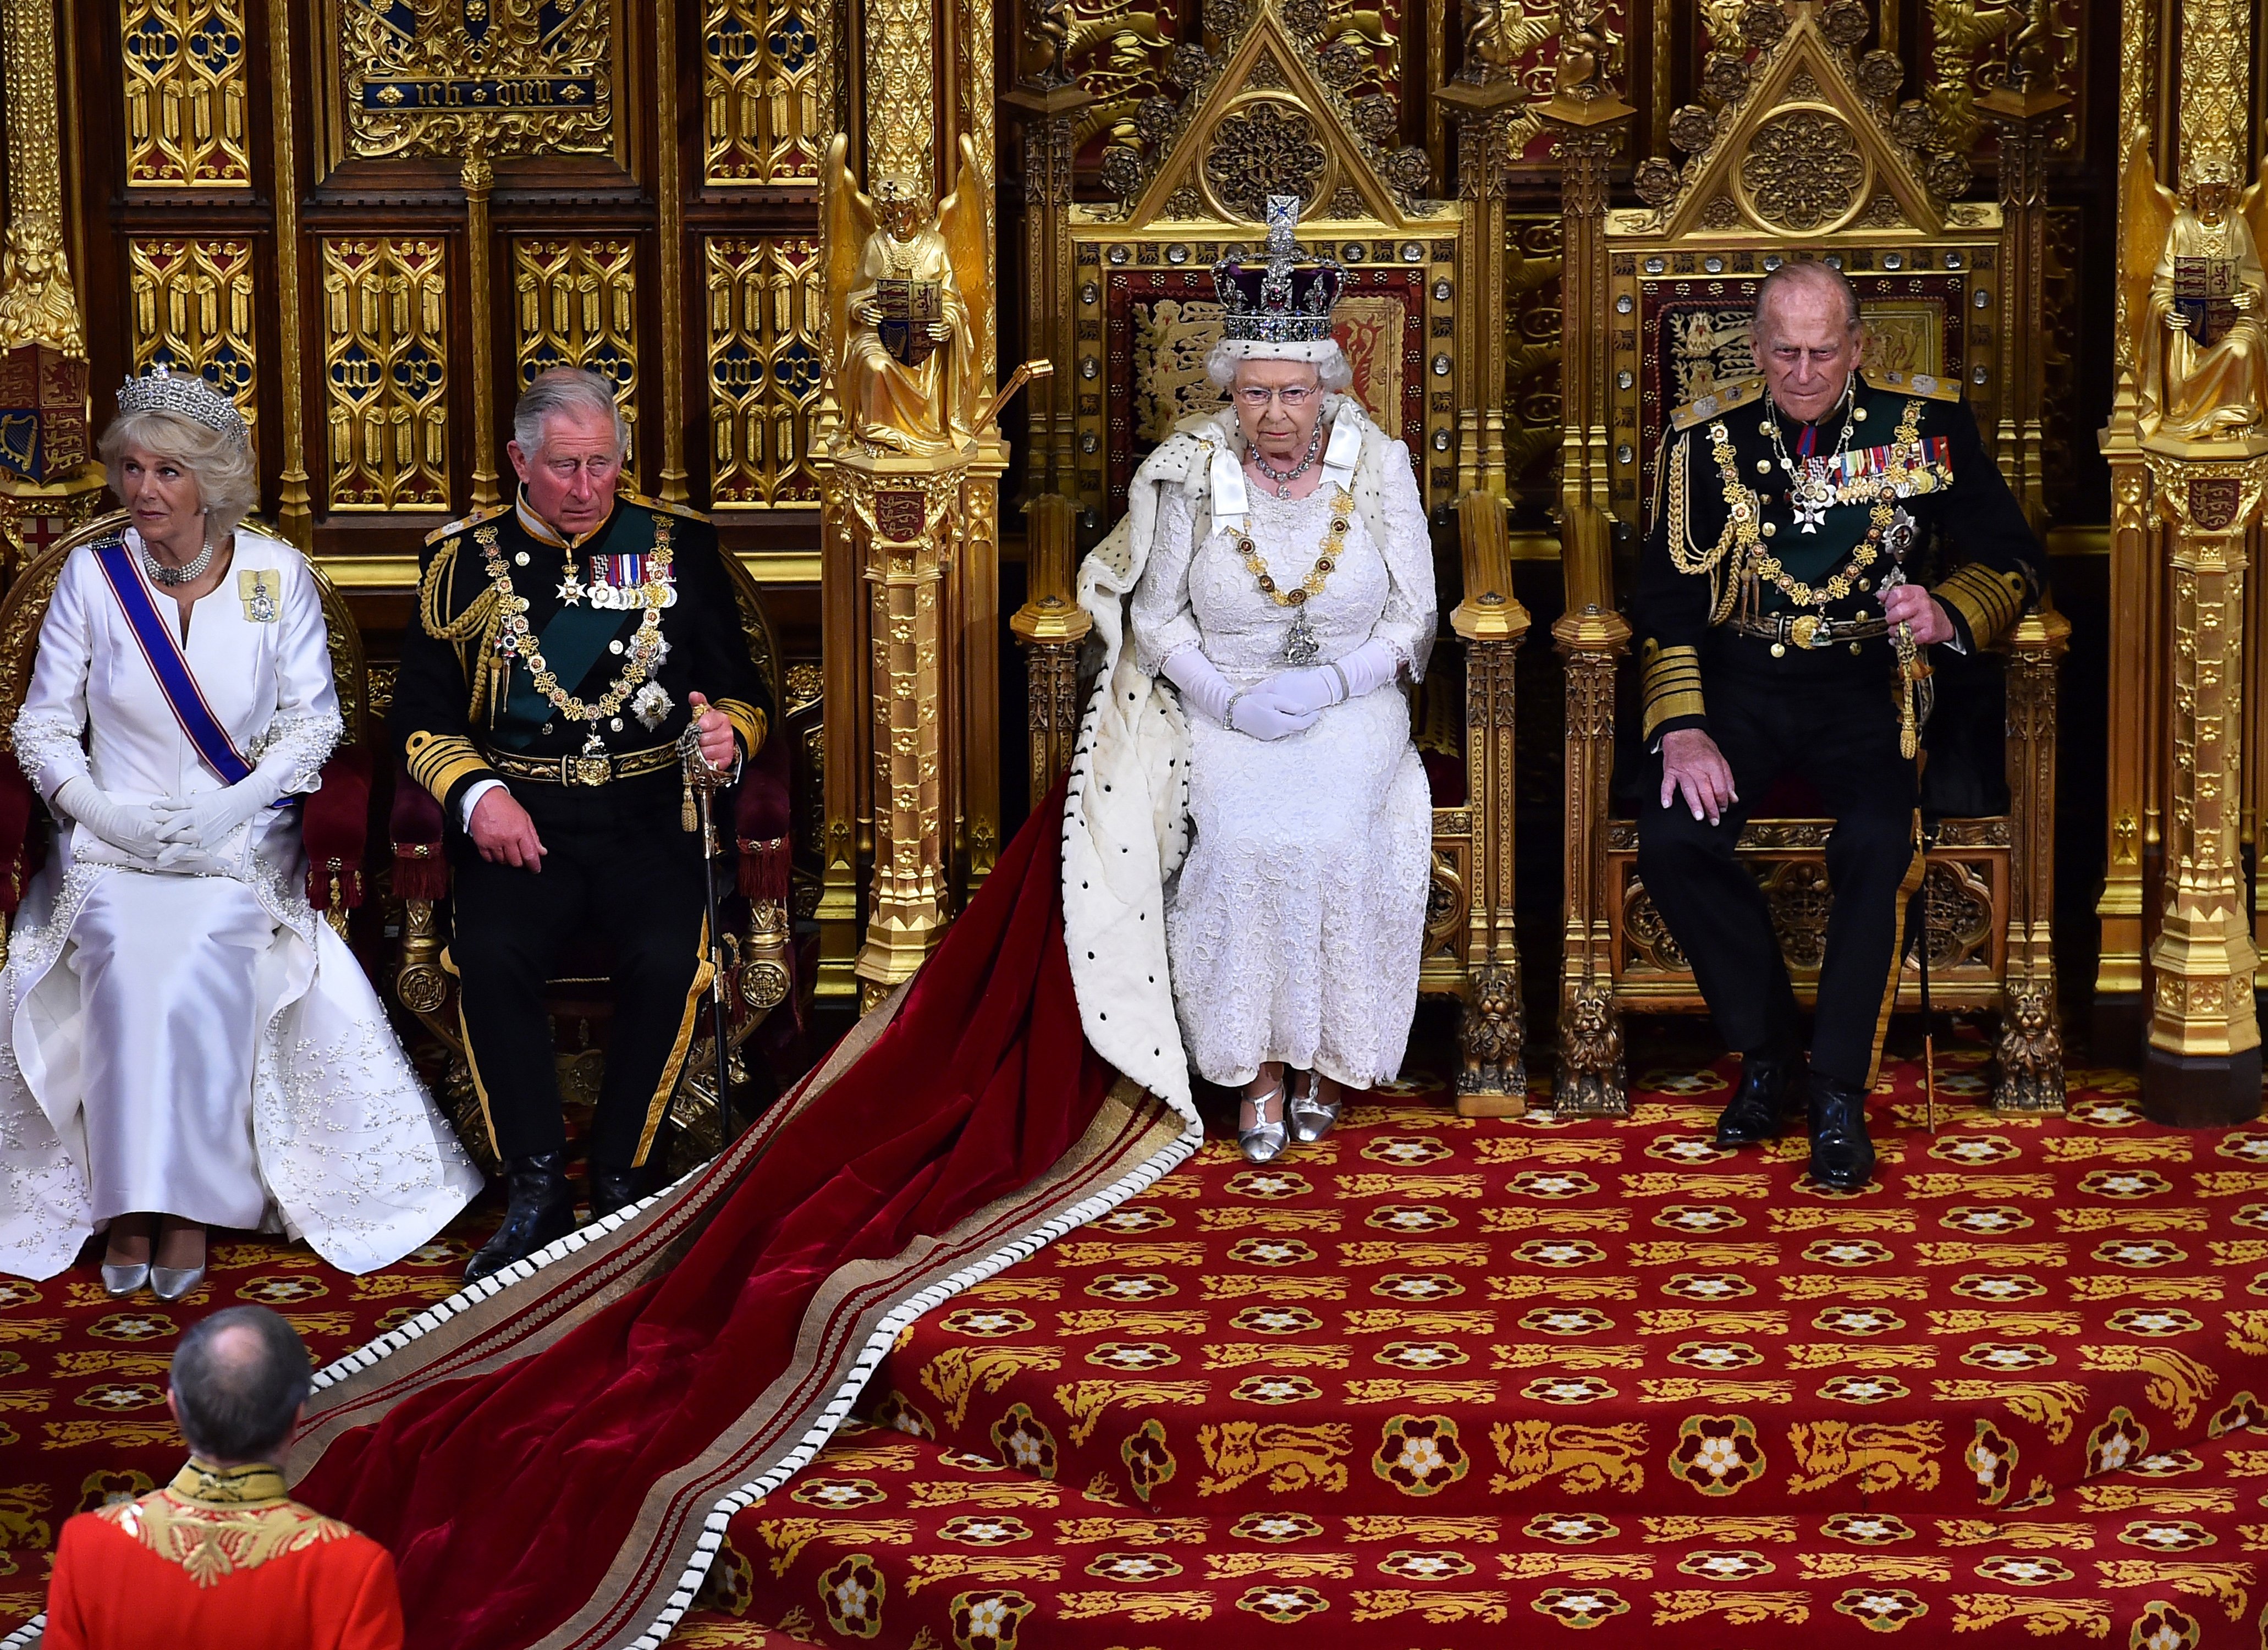 La reine Elizabeth II photographiée dans la Chambre des Lords aux côtés du prince Philip, du prince Charles et de Camilla Parker-Bowles lors de l'ouverture officielle du Parlement dans la Chambre des Lords, au Palais de Westminster, le 27 mai 2015 à Londres, en Angleterre | Source : Getty Images